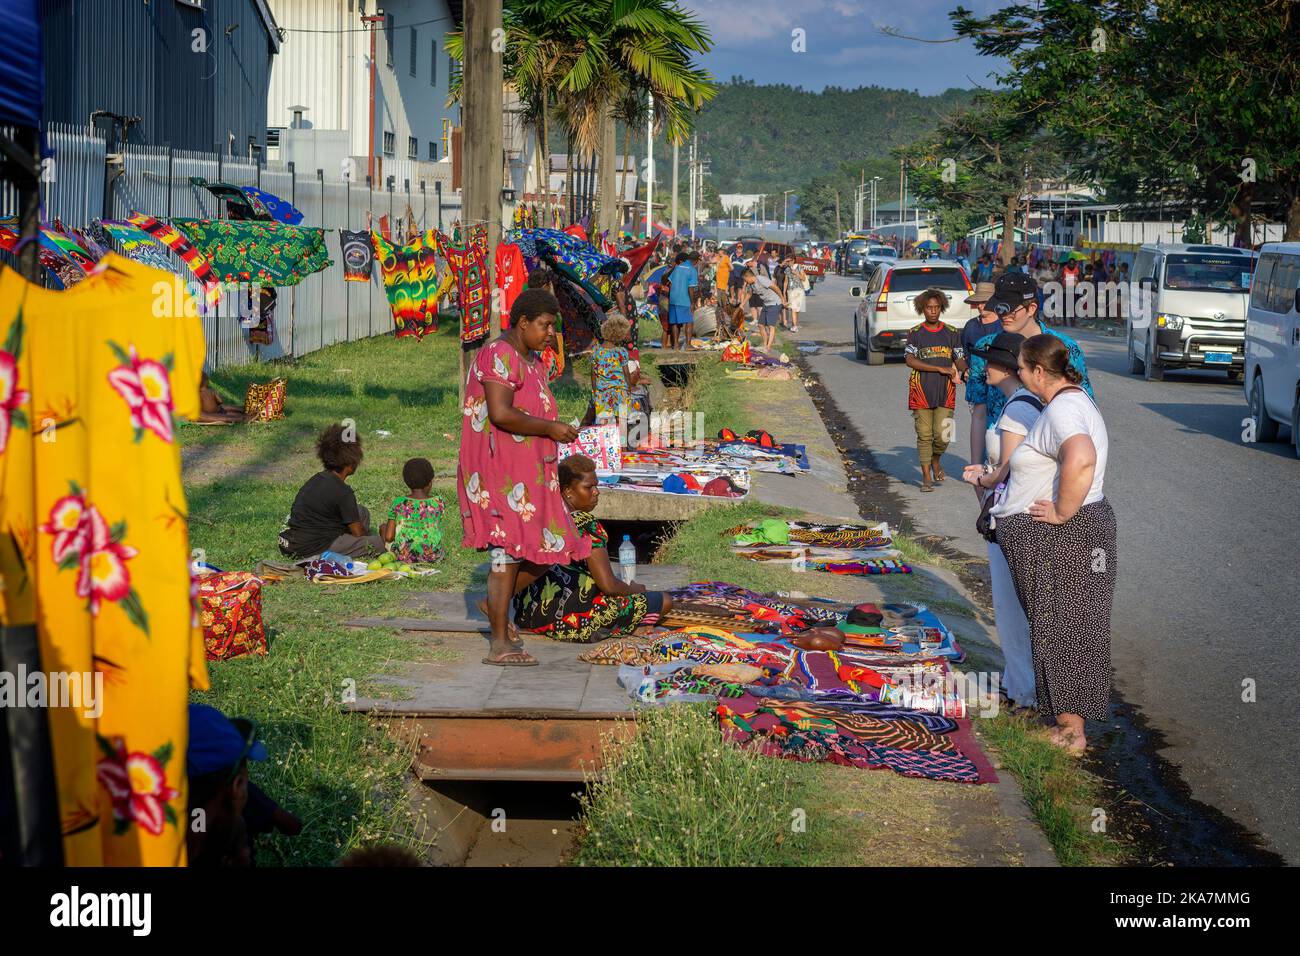 Les touristes des bateaux de croisière achètent des marchandises sur le marché en plein air dans la rue à l'extérieur du port de Rabaul. Rabaul, Papouasie-Nouvelle-Guinée Banque D'Images